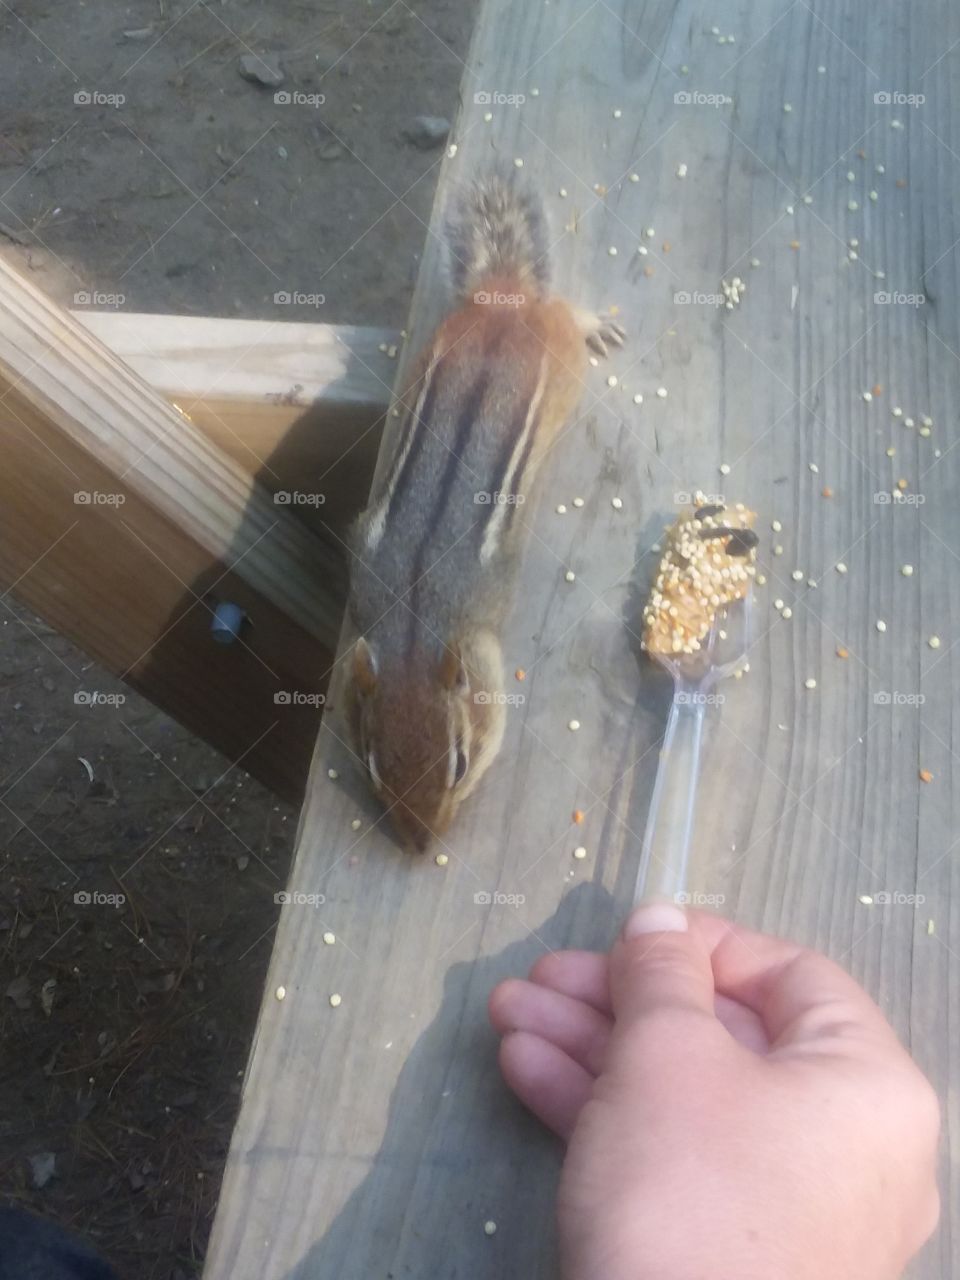 feeding chipmunk